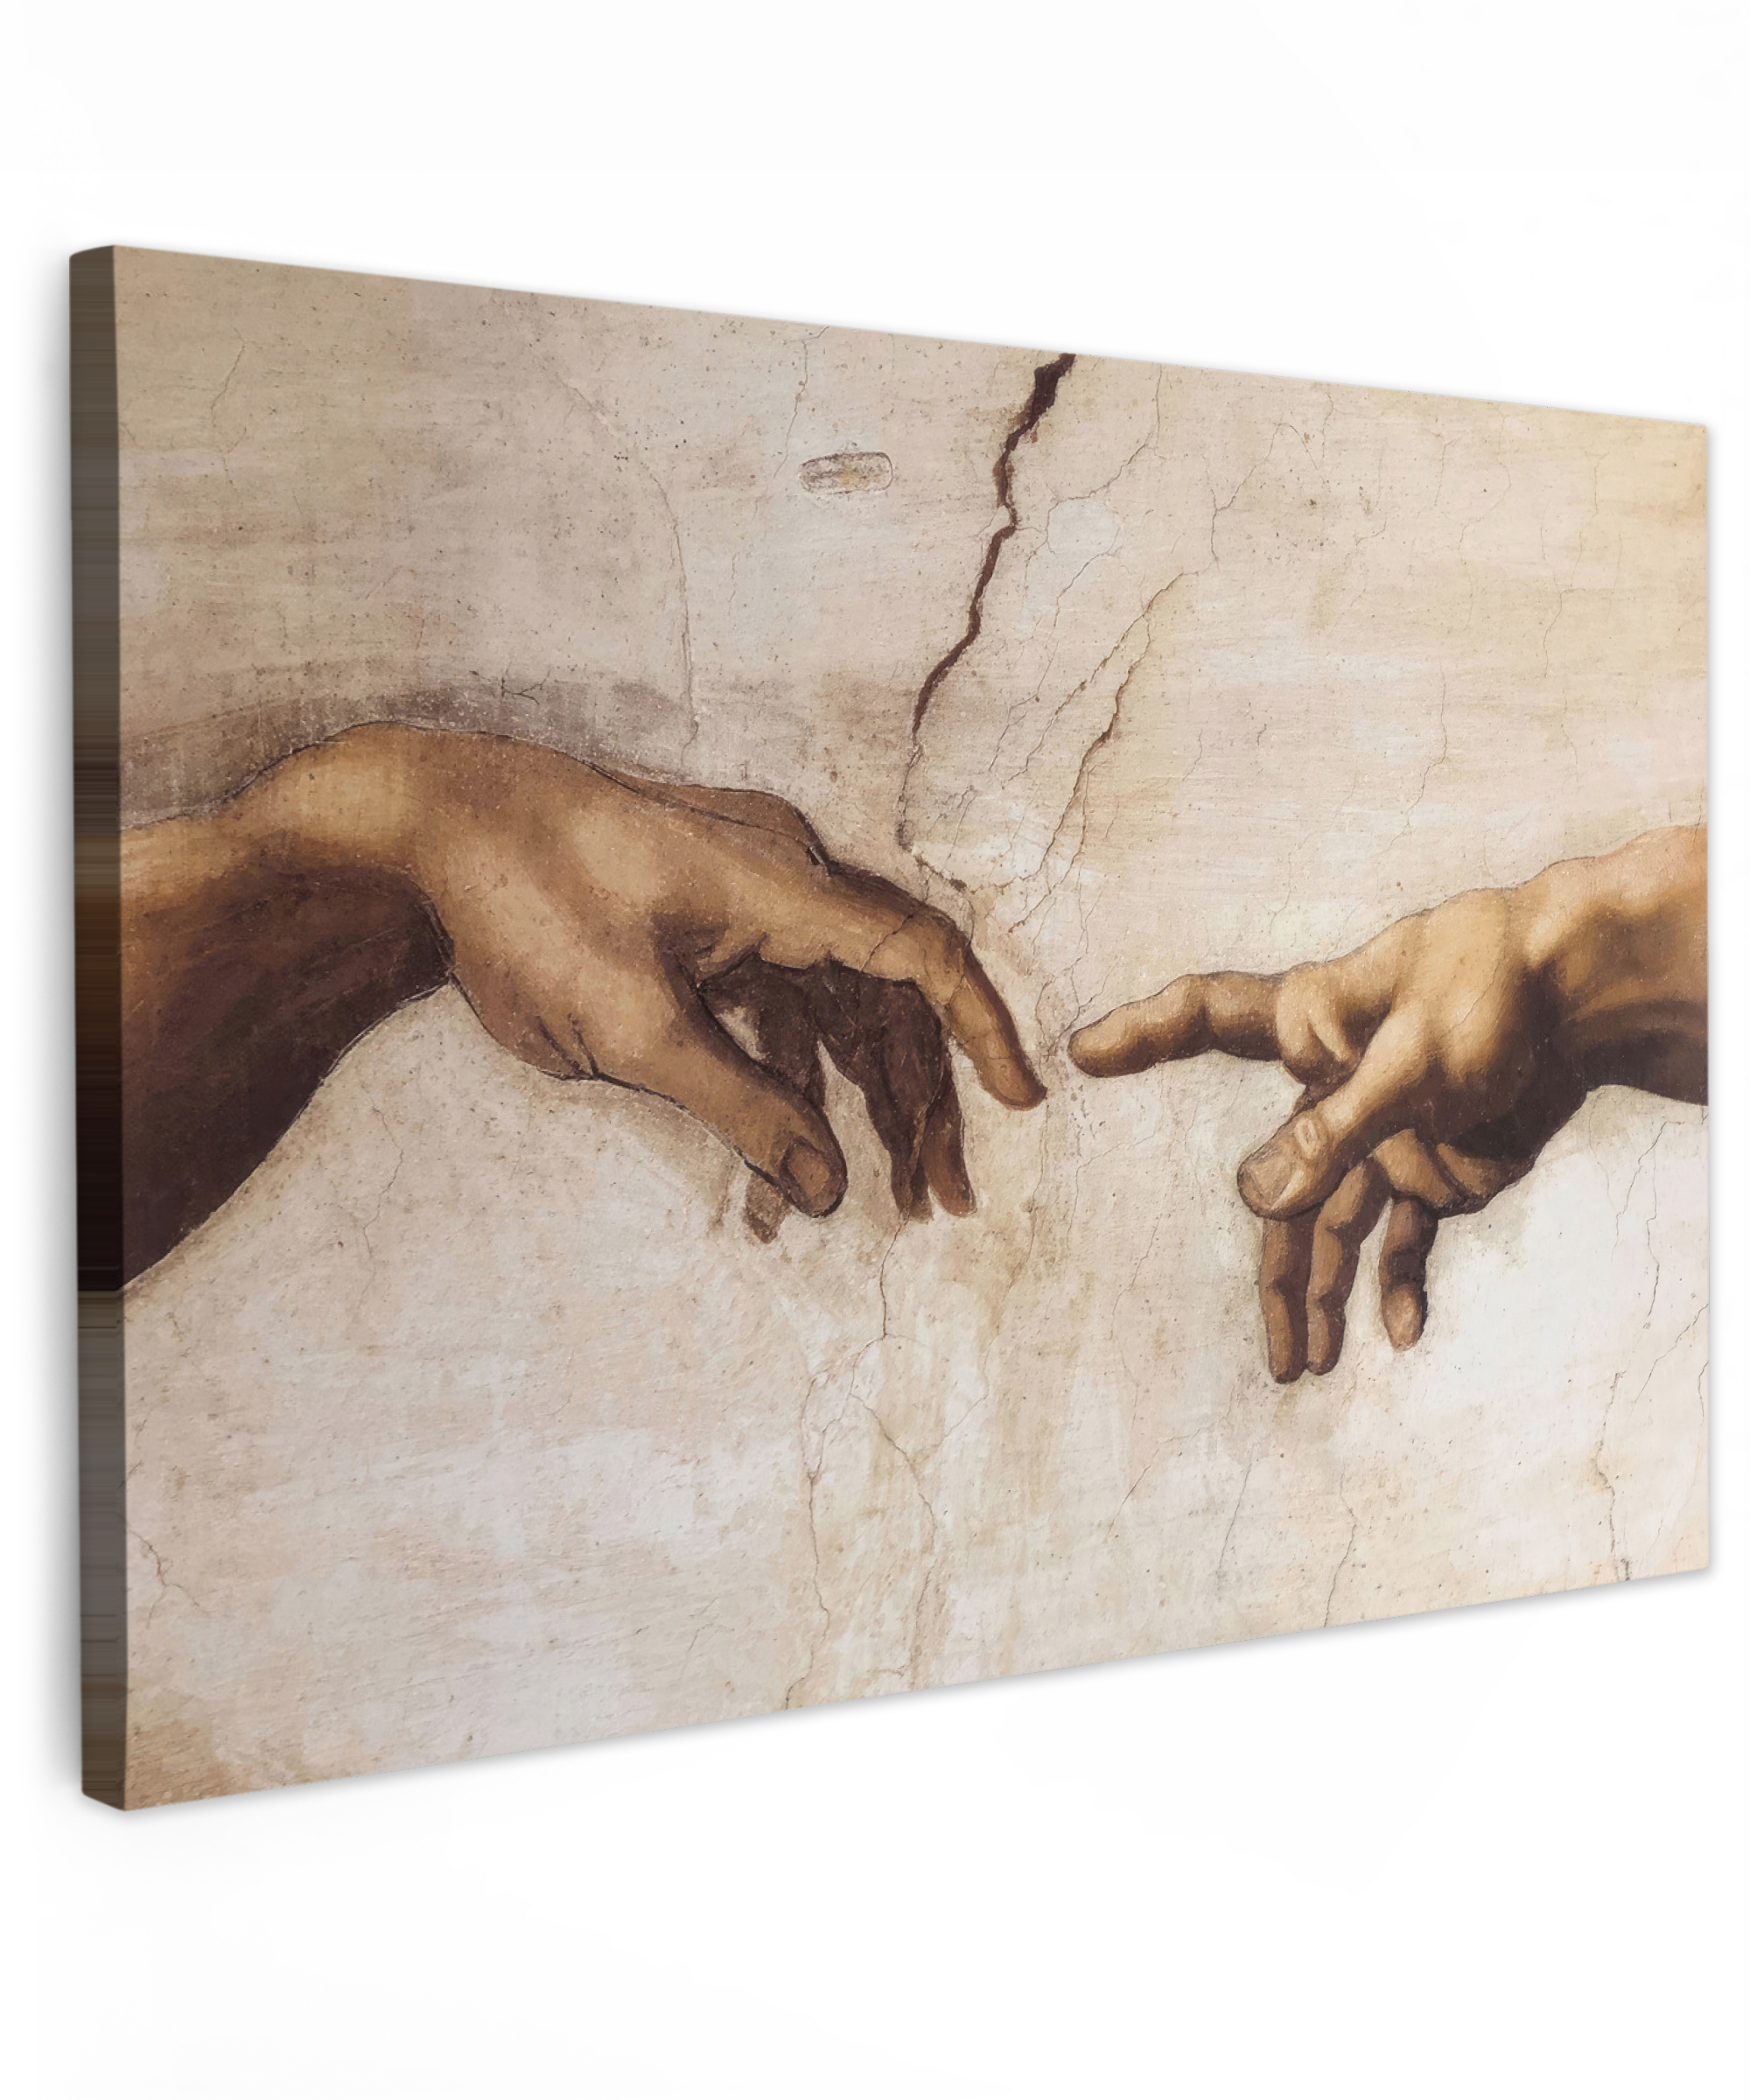 Canvas schilderij - Adam - Michelangelo - Schilderij - Creation of Adam